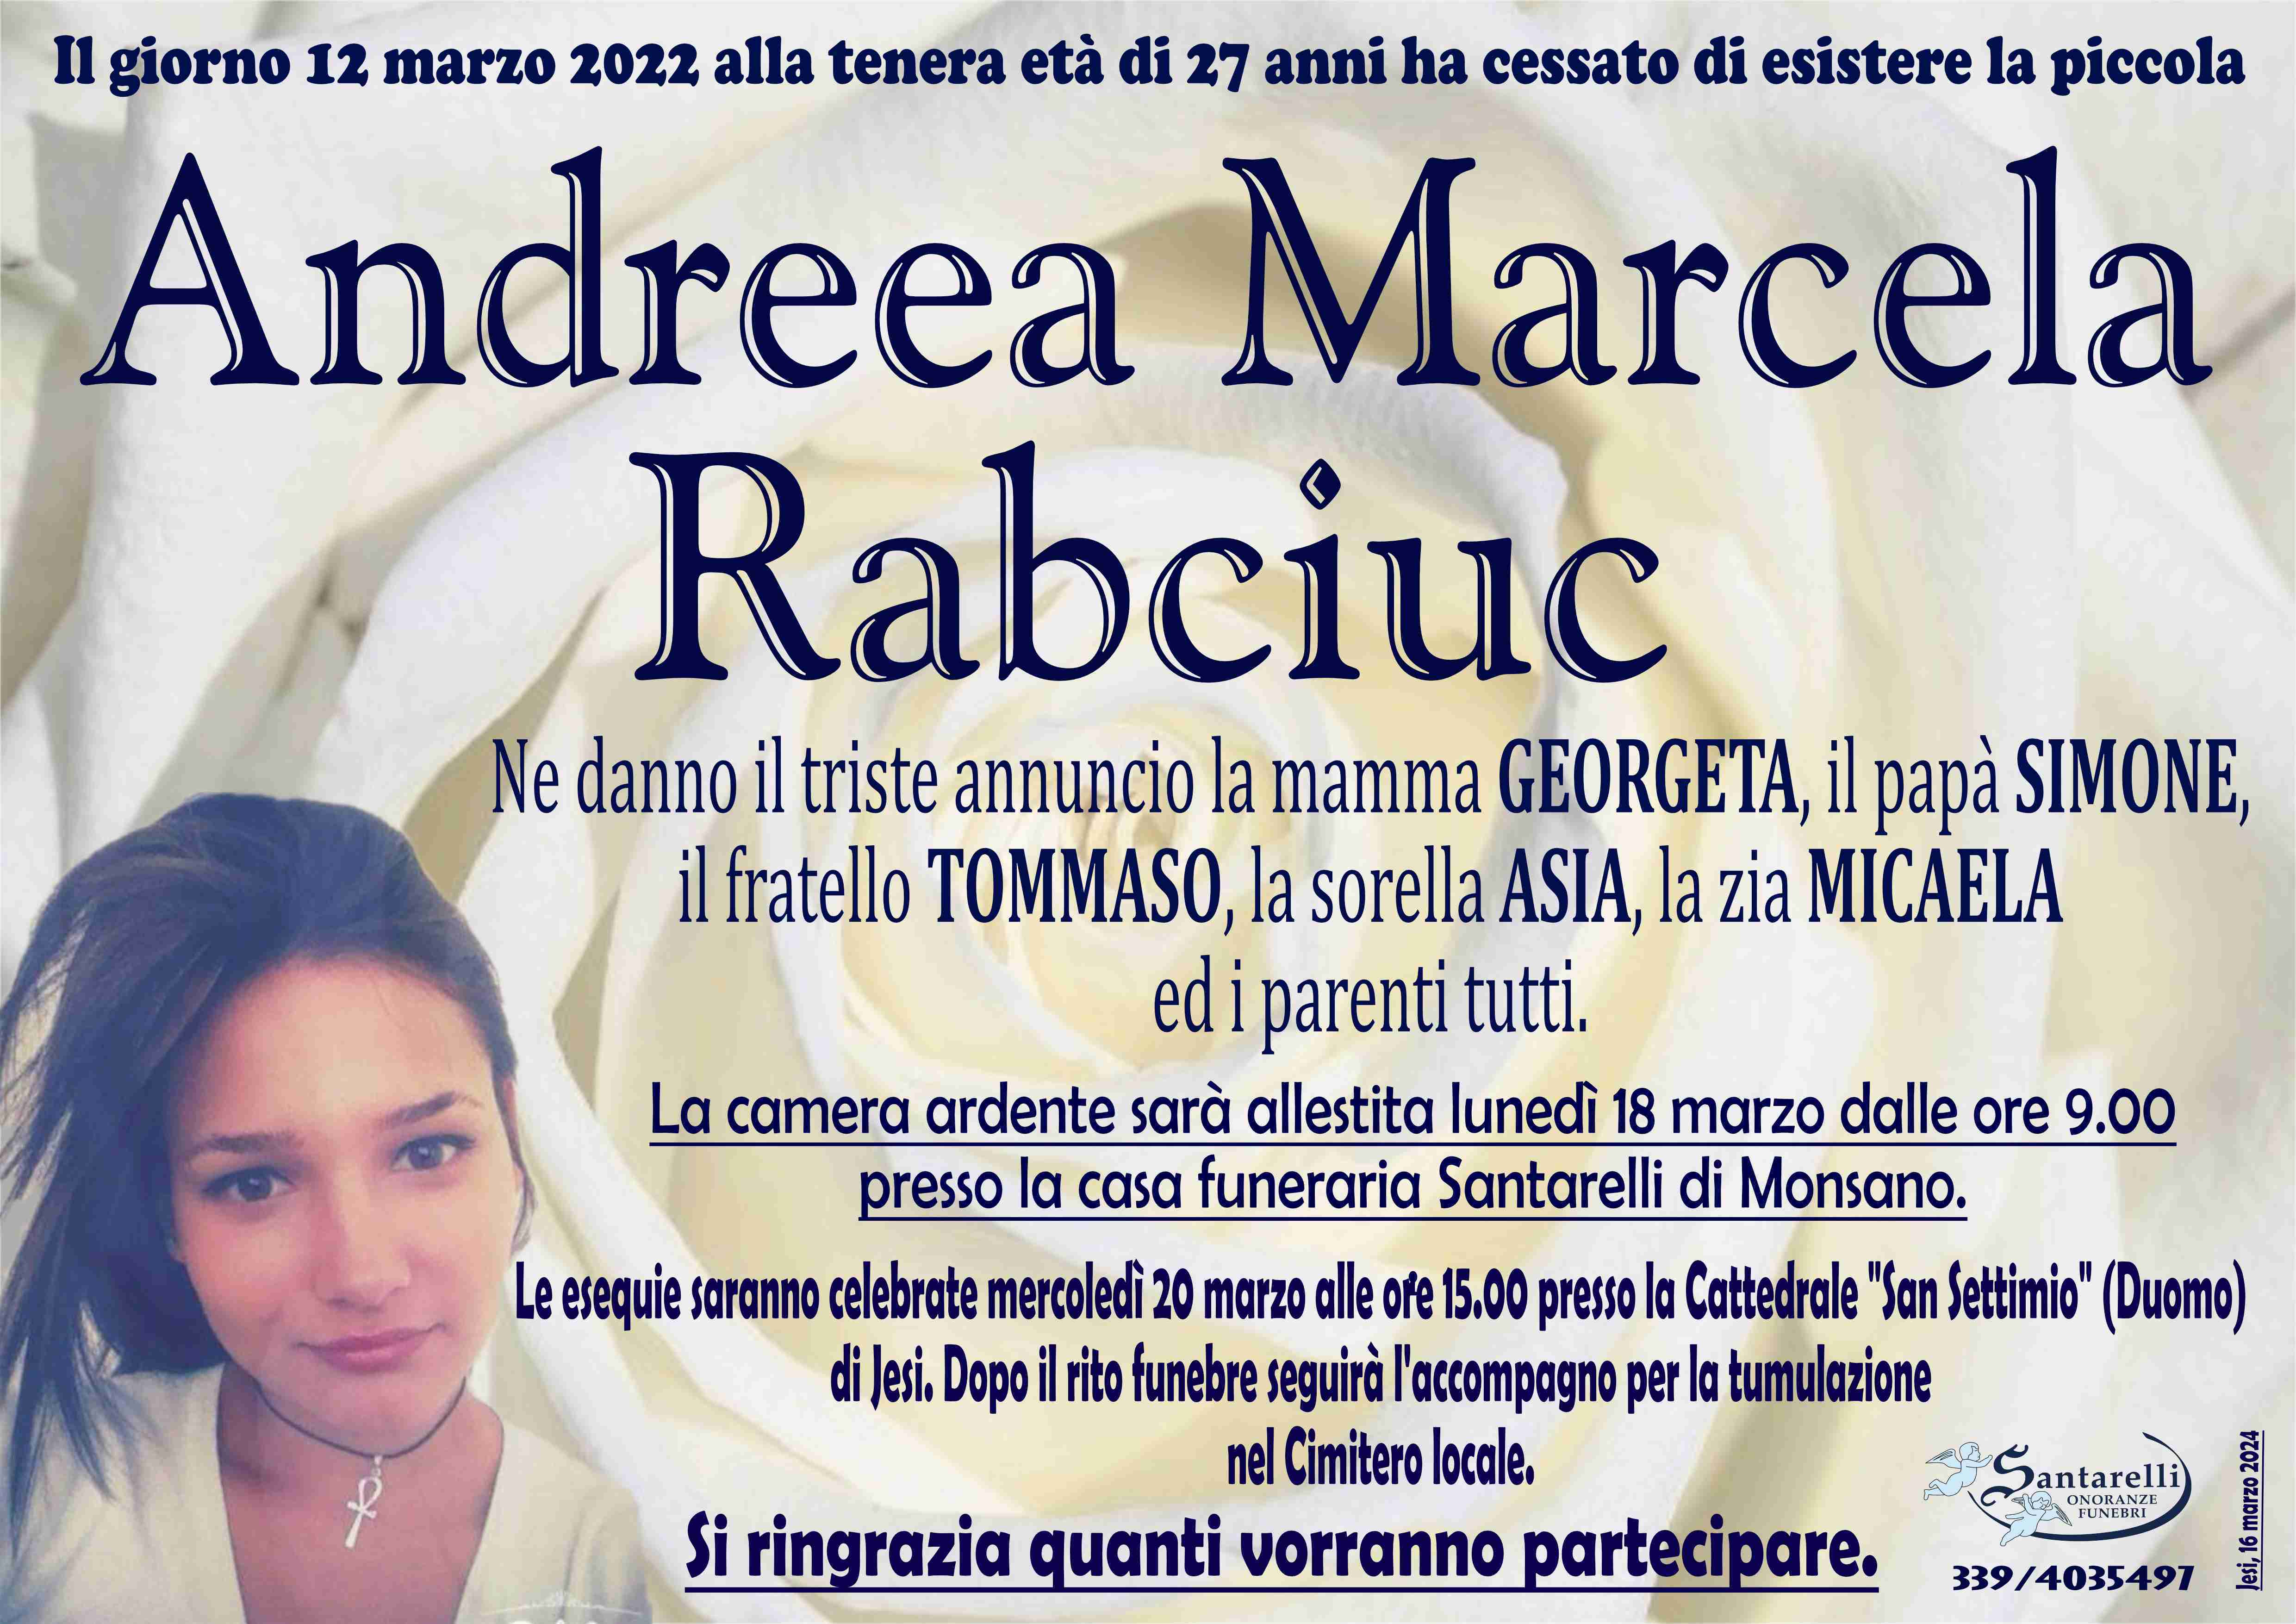 Andreea Marcela Rabciuc